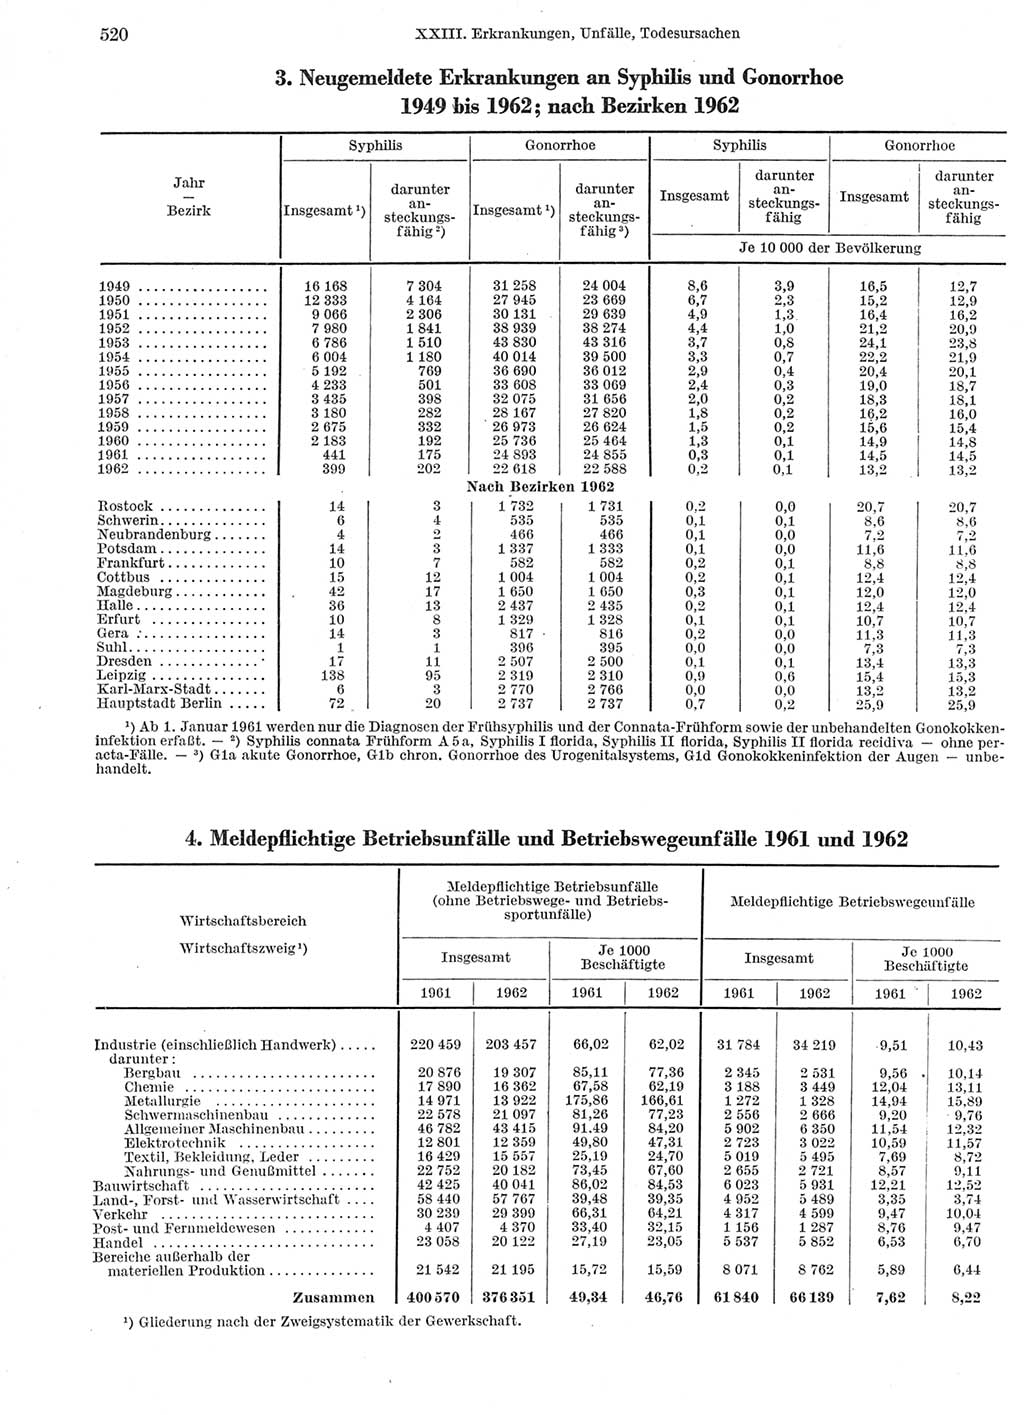 Statistisches Jahrbuch der Deutschen Demokratischen Republik (DDR) 1963, Seite 520 (Stat. Jb. DDR 1963, S. 520)